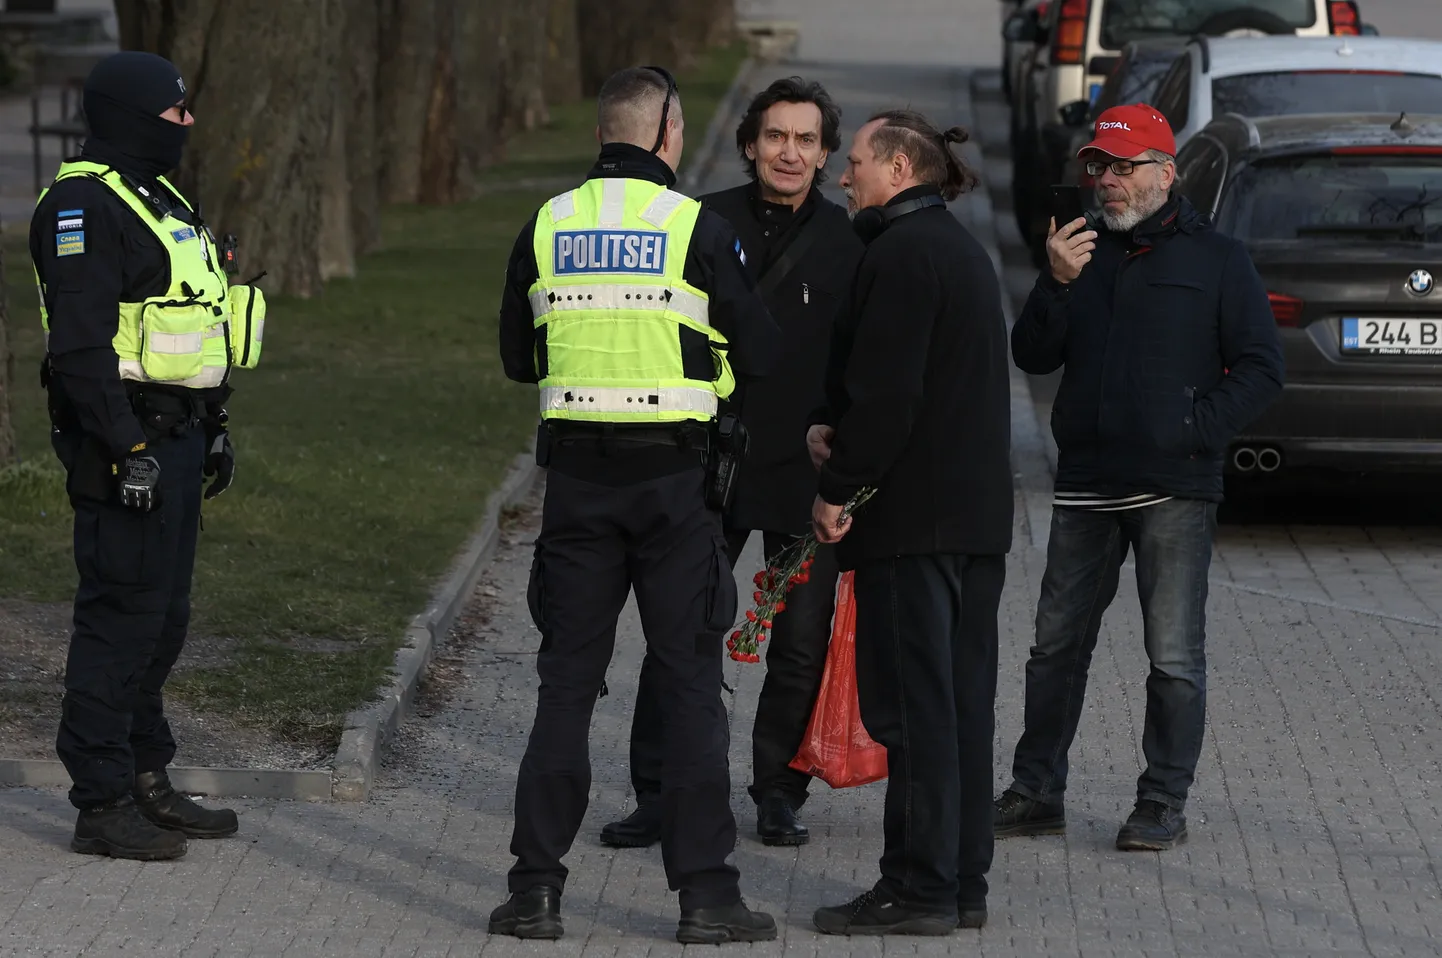 Endise Öise Vahtkonna aktivistid Sergei Tõdõjakov (keskel) ja Sergei Tšaulin (lilledega) Tõnismäel politseinikega vestlemas.